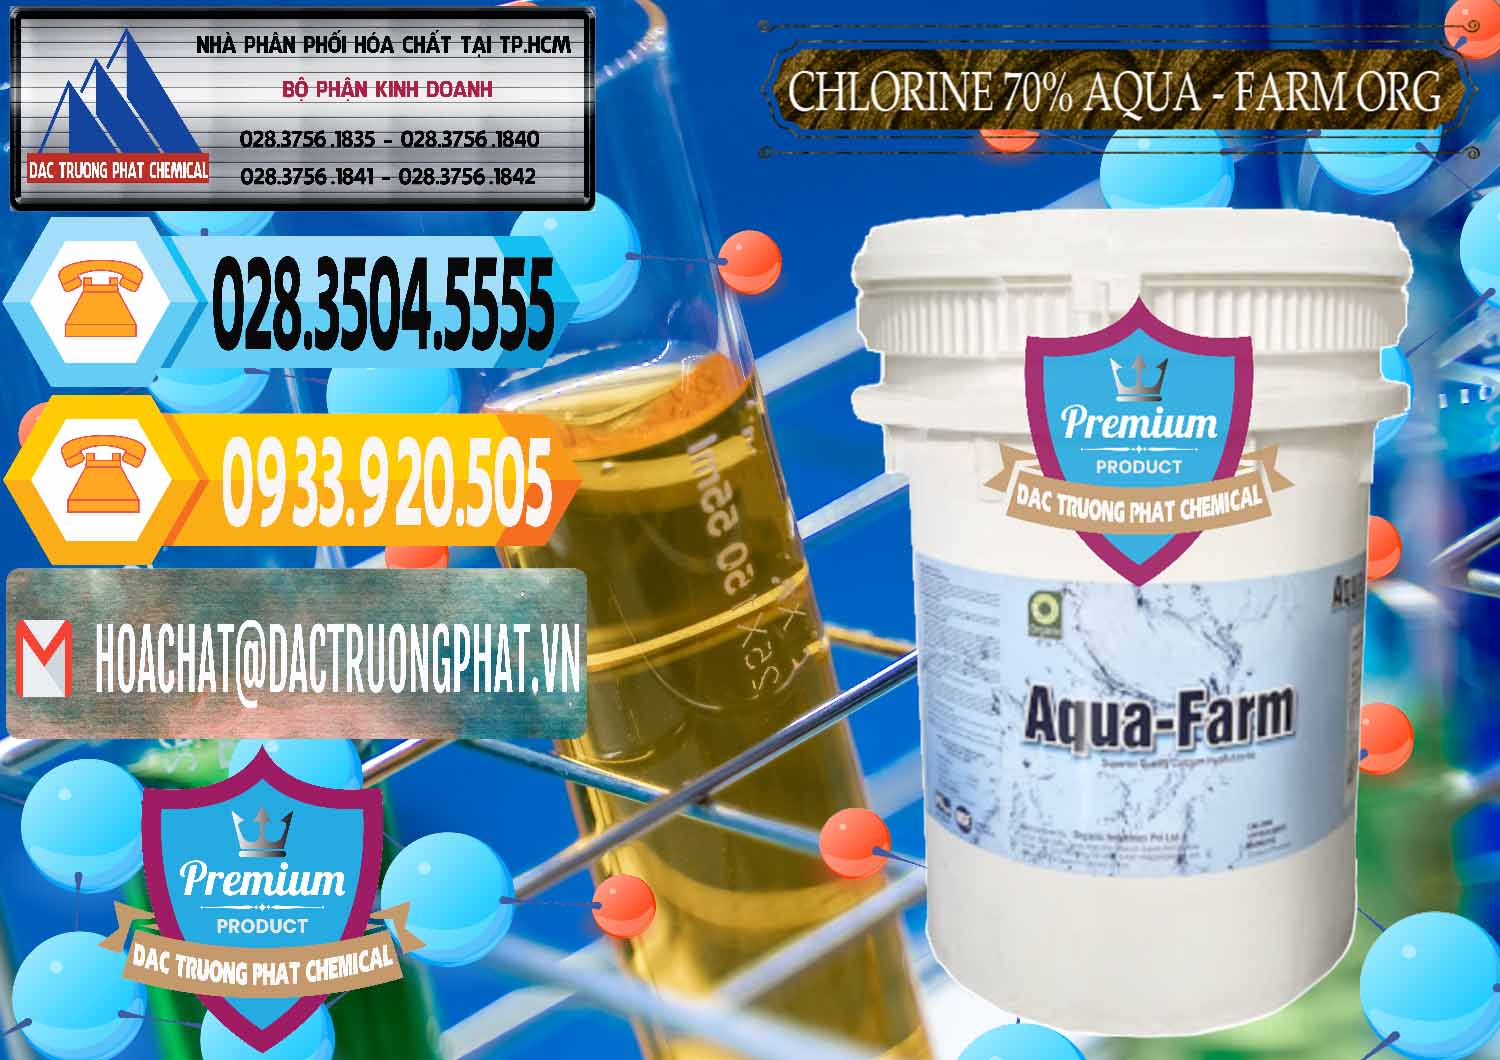 Công ty cung ứng ( bán ) Chlorine – Clorin 70% Aqua - Farm ORG Organic Ấn Độ India - 0246 - Công ty cung cấp _ phân phối hóa chất tại TP.HCM - hoachattayrua.net